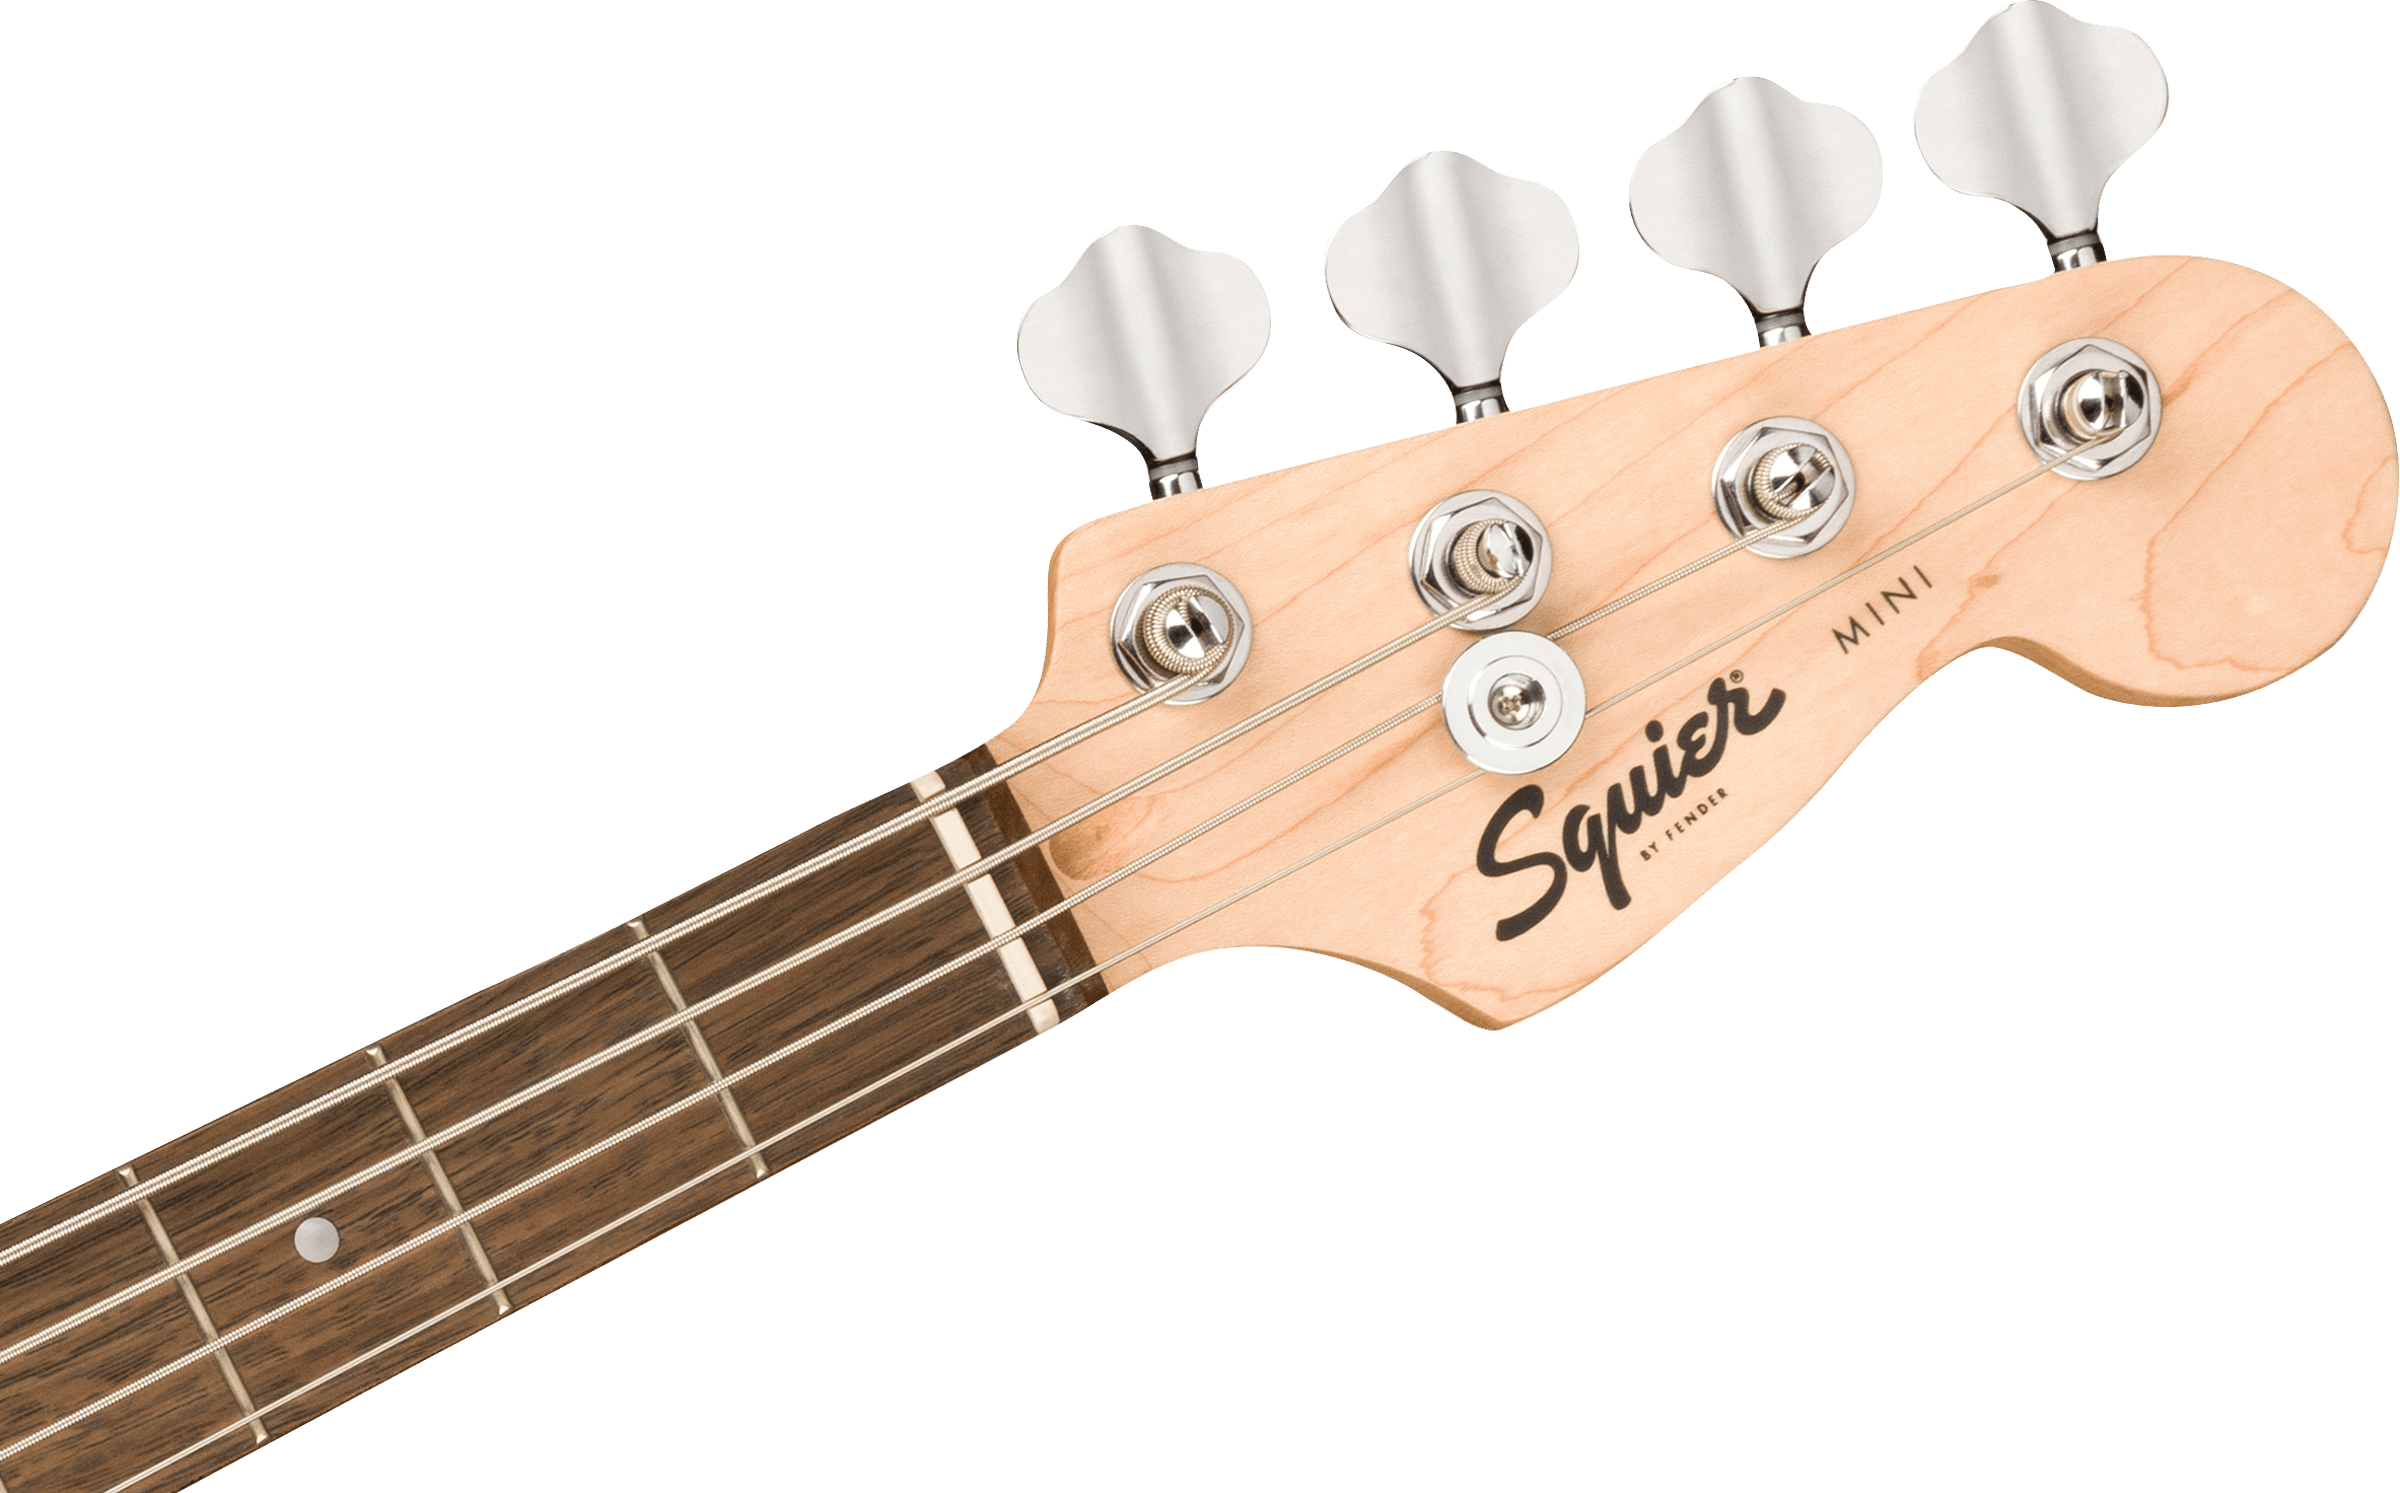 Squier Mini Precision Bass, Laurel Fb, Dakota Red